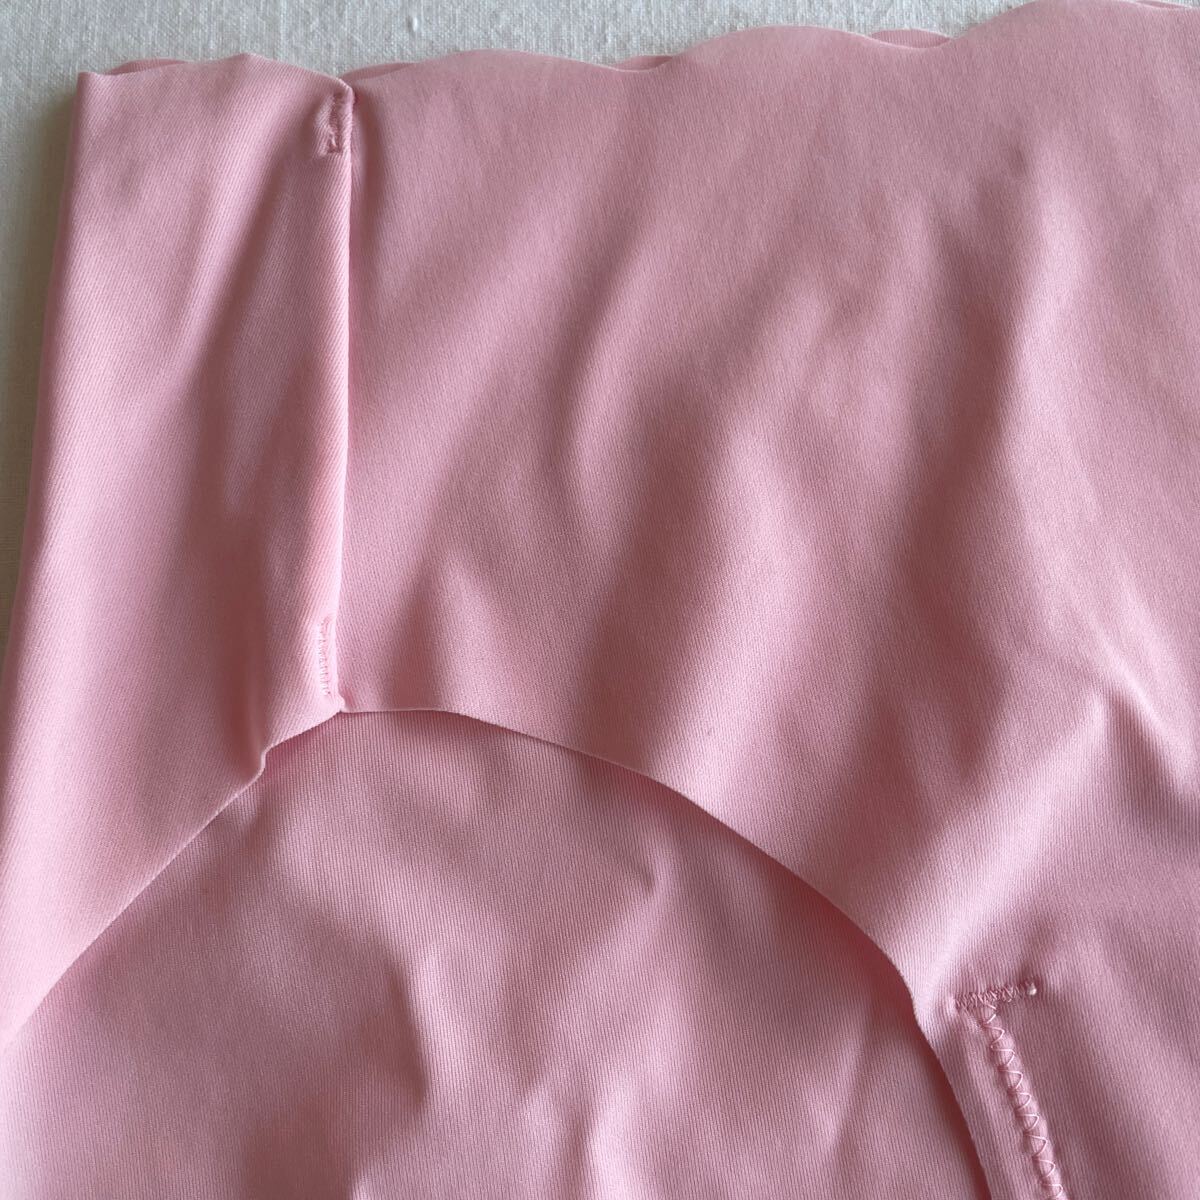 アモスタイルトリンプショーツL ピンク 単品 薄い レディース下着パンティl 匿名配送の画像2